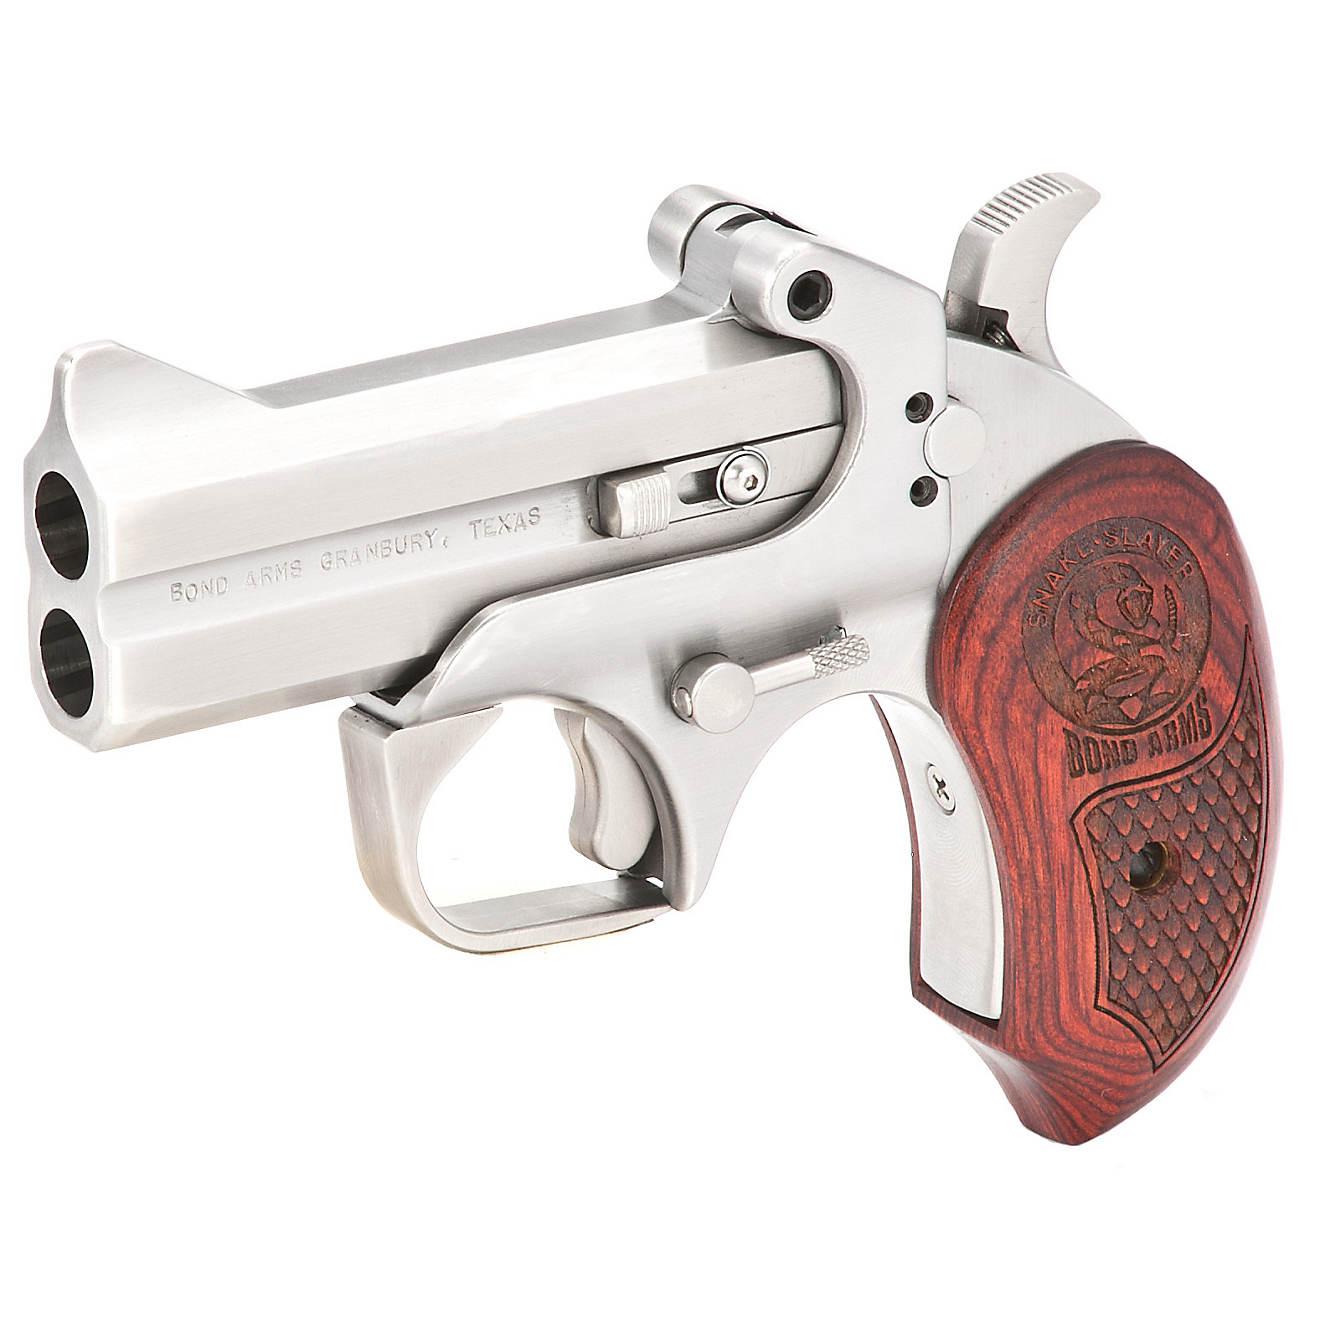 Bond Arms Snake Slayer .45/.410 Derringer Pistol                                                                                 - view number 1